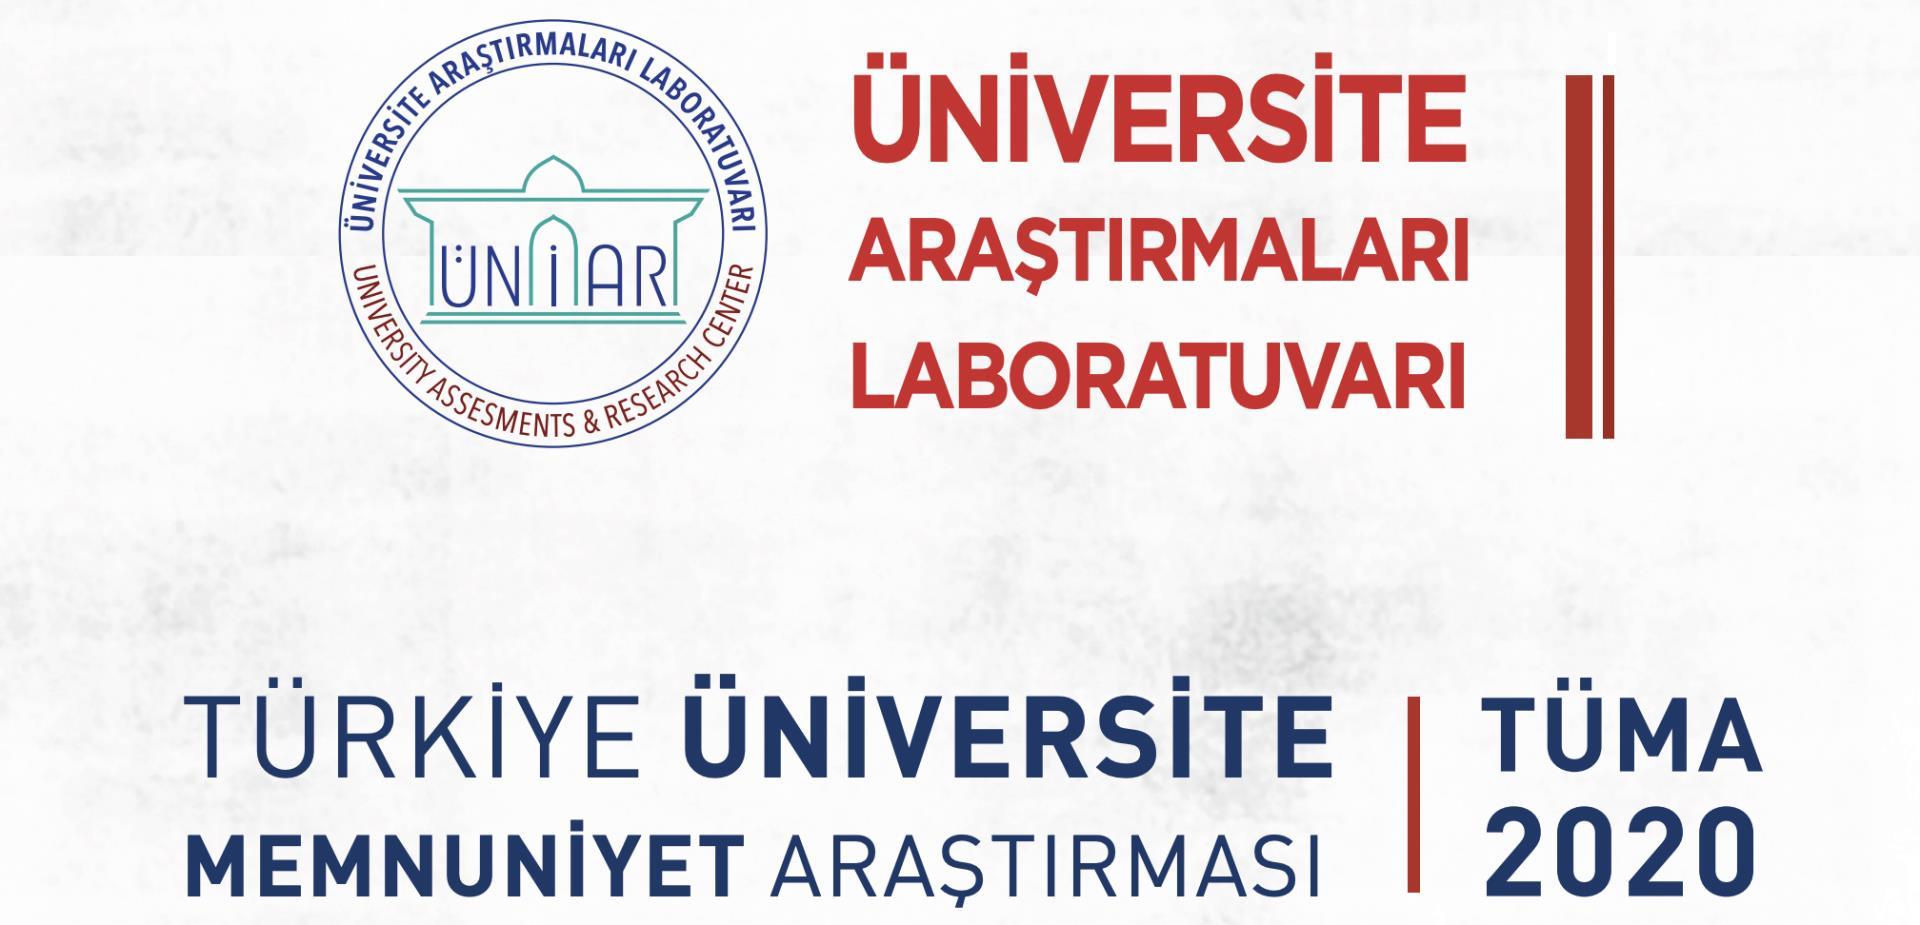 Üniversitemiz, Üniversite Araştırmaları Laboratuvarı (ÜNİAR) Tarafından Gerçekleştirilen “Türkiye Üniversite Memnuniyet Araştırması (TÜMA)” nda 2020 Yılı İçerisinde de Yükselişini Sürdürdü